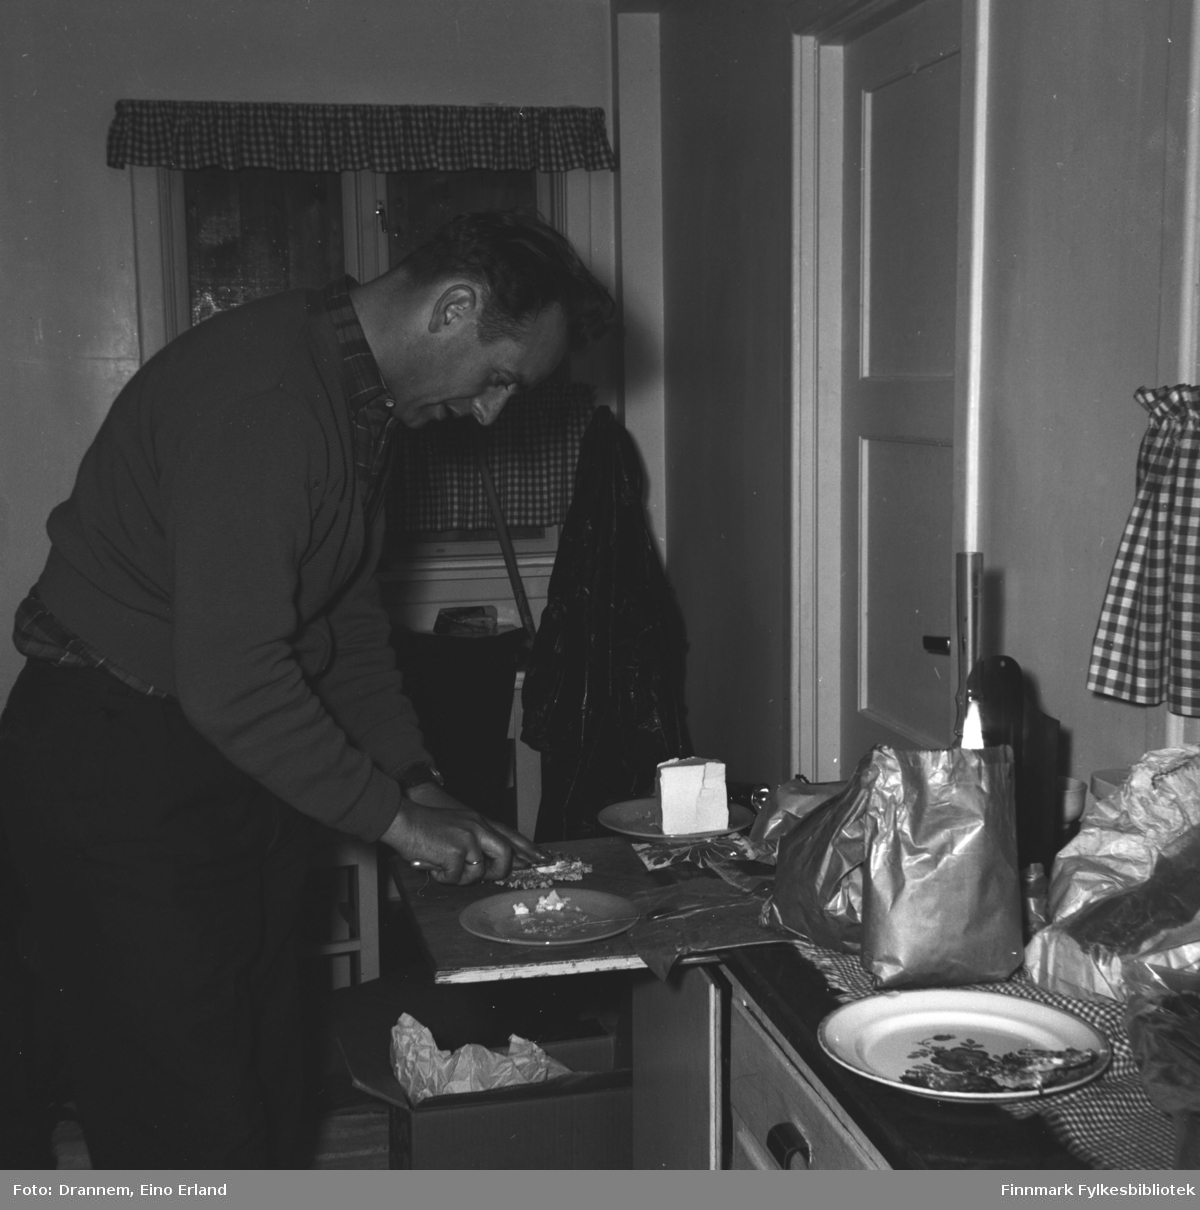 En mann (Jakobsen?)smører brødskviver i kjøkkenet. Bildet er tatt sannsynligvis i Hammerfest